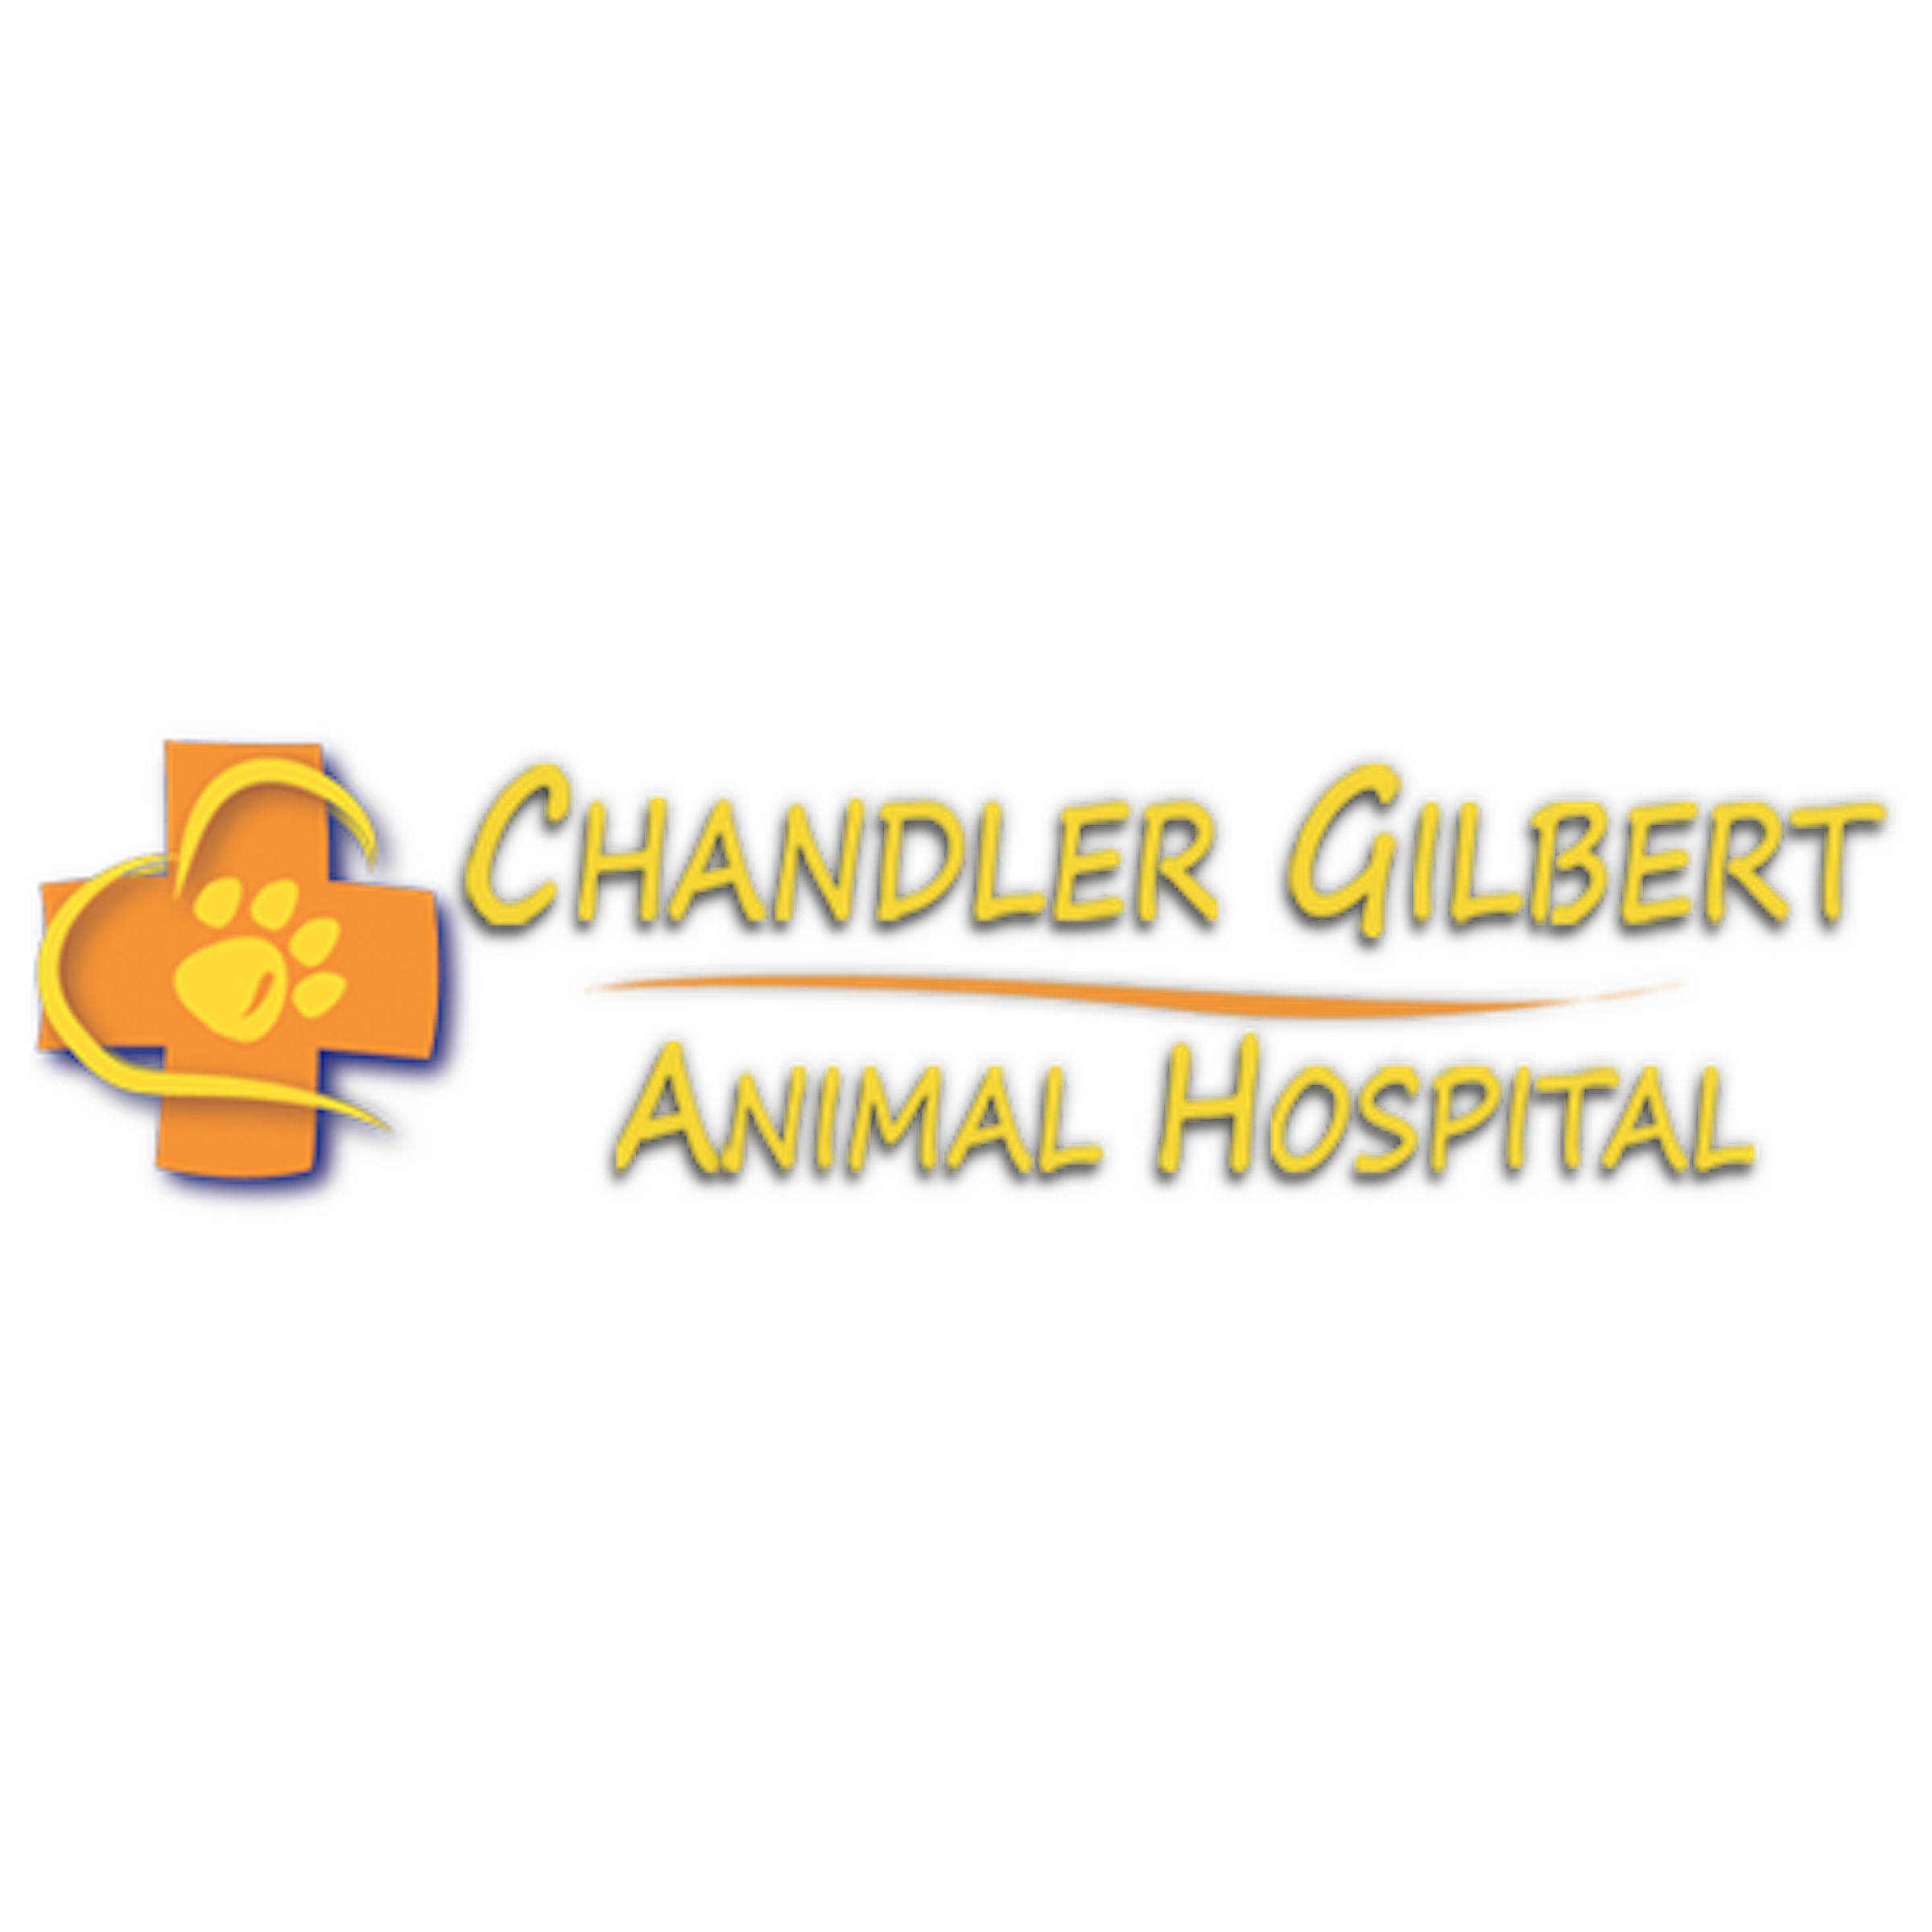 Chandler Gilbert Animal Hospital - Chandler, AZ 85286 - (480)895-5650 | ShowMeLocal.com